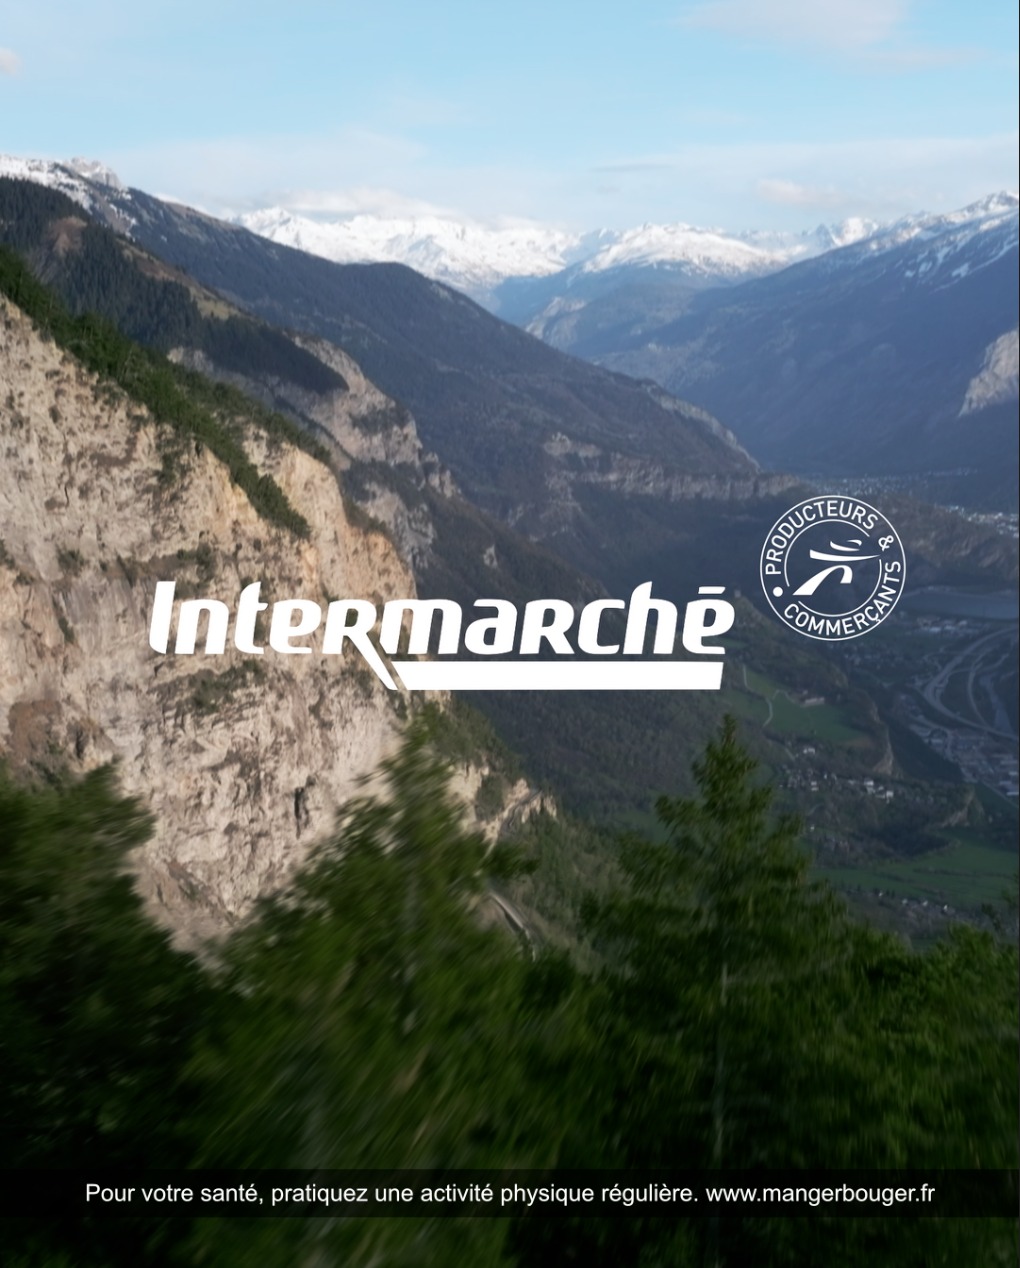 Aperçu du projet vidéo pour Intermarché en Savoie.